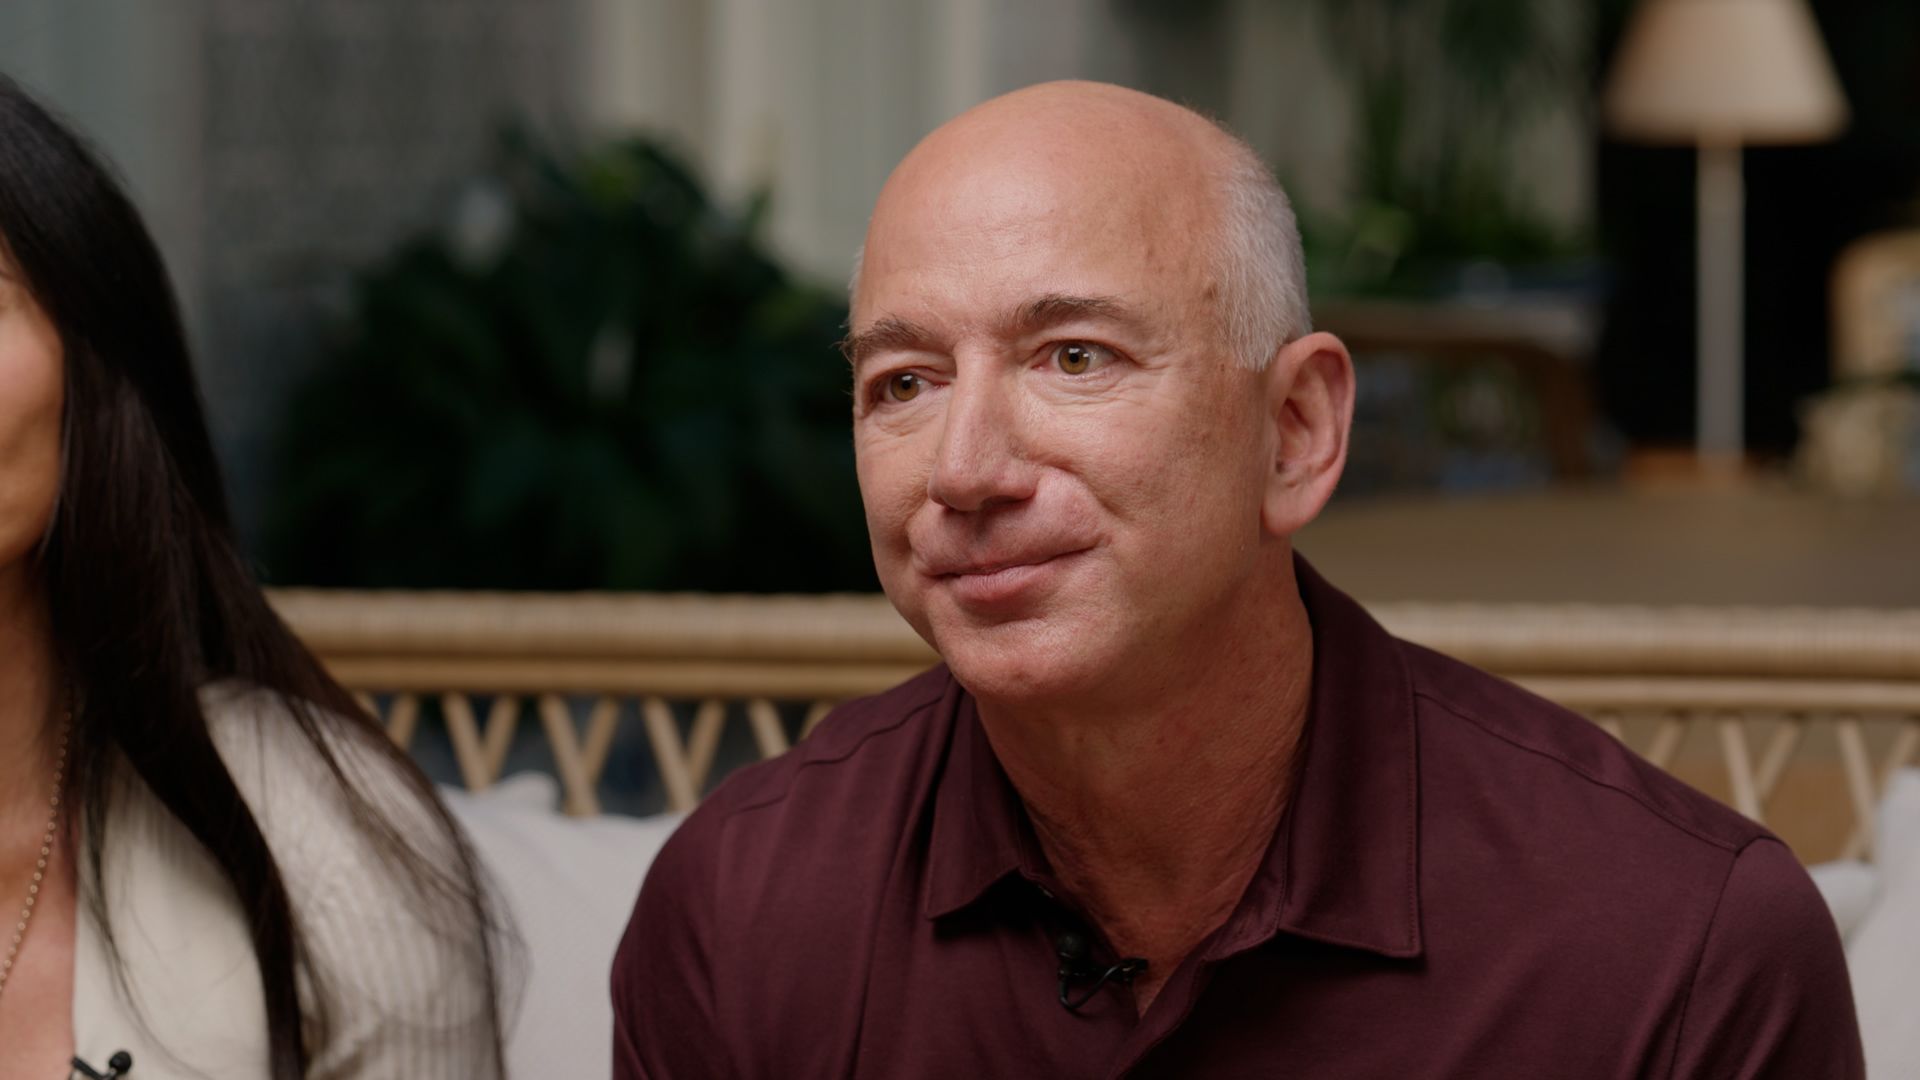 Jeff Bezos CEO de Amazon donará la mayor parte de su fortuna a causas filantrópicas